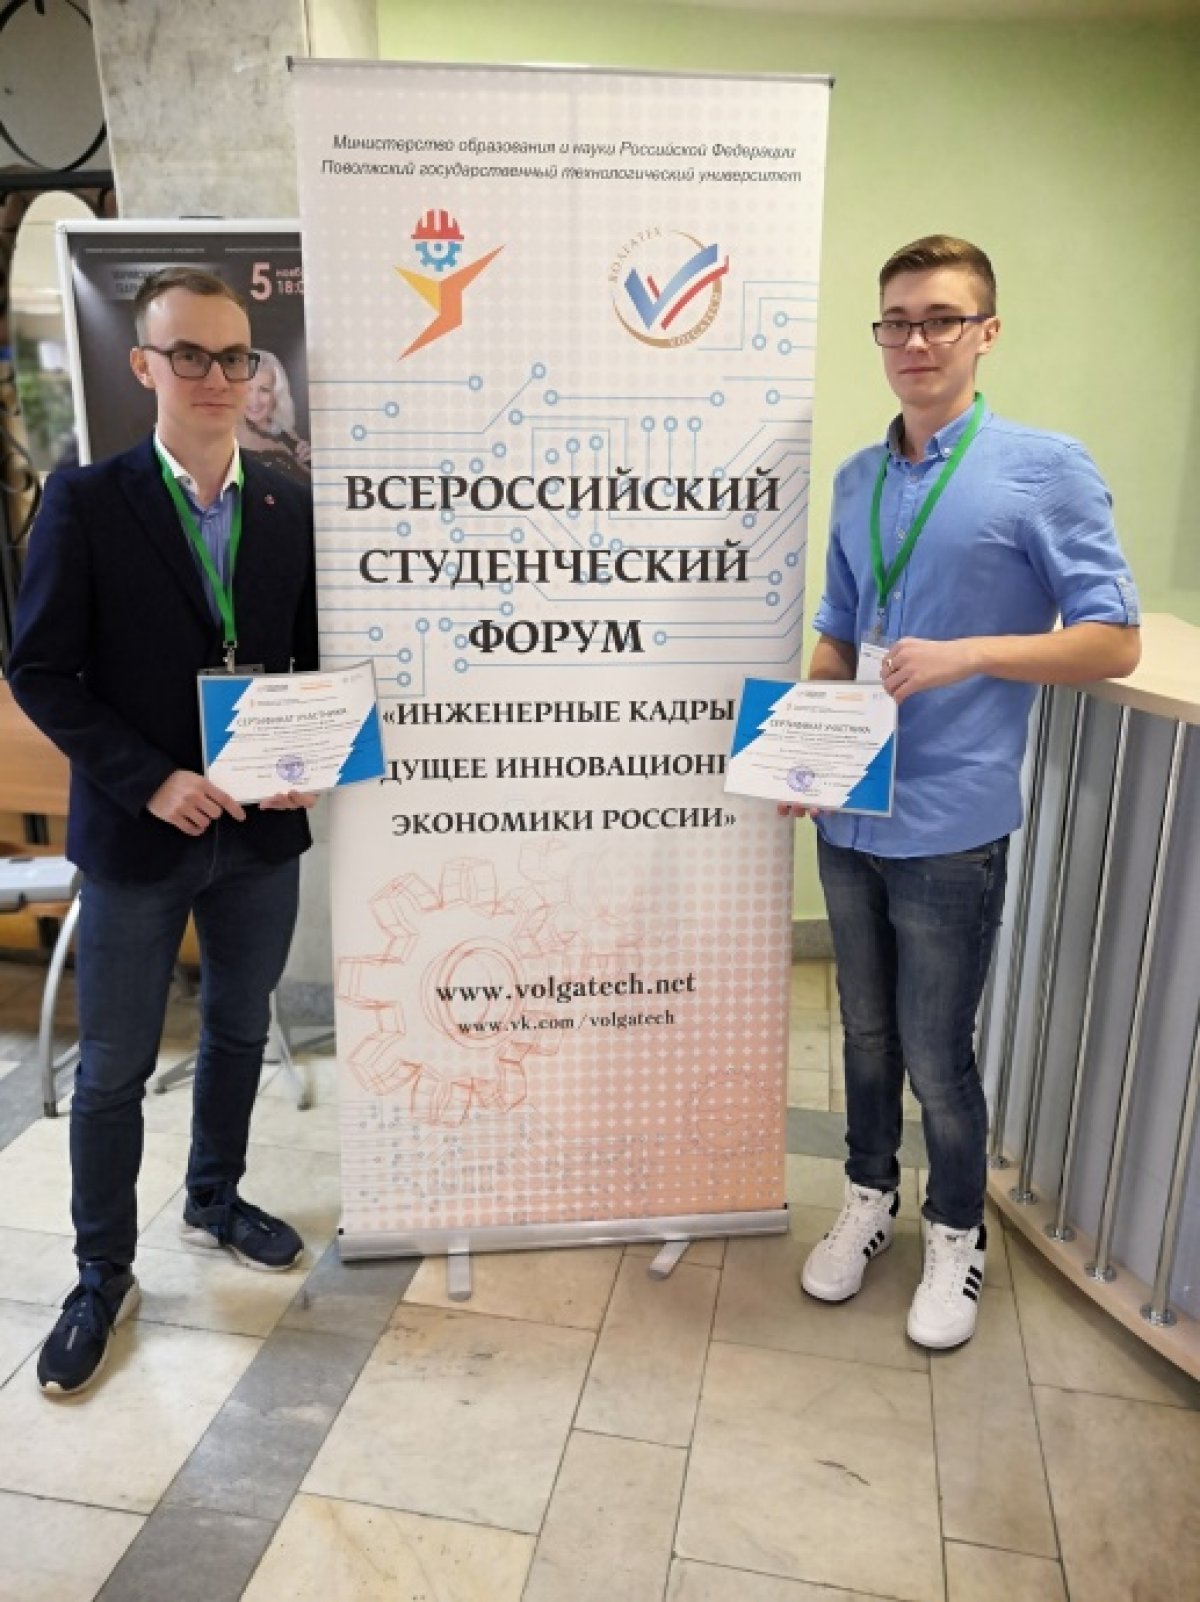 С 5 по 8 ноября 2019 года в Йошкар-Оле проходил V Всероссийский студенческий форум